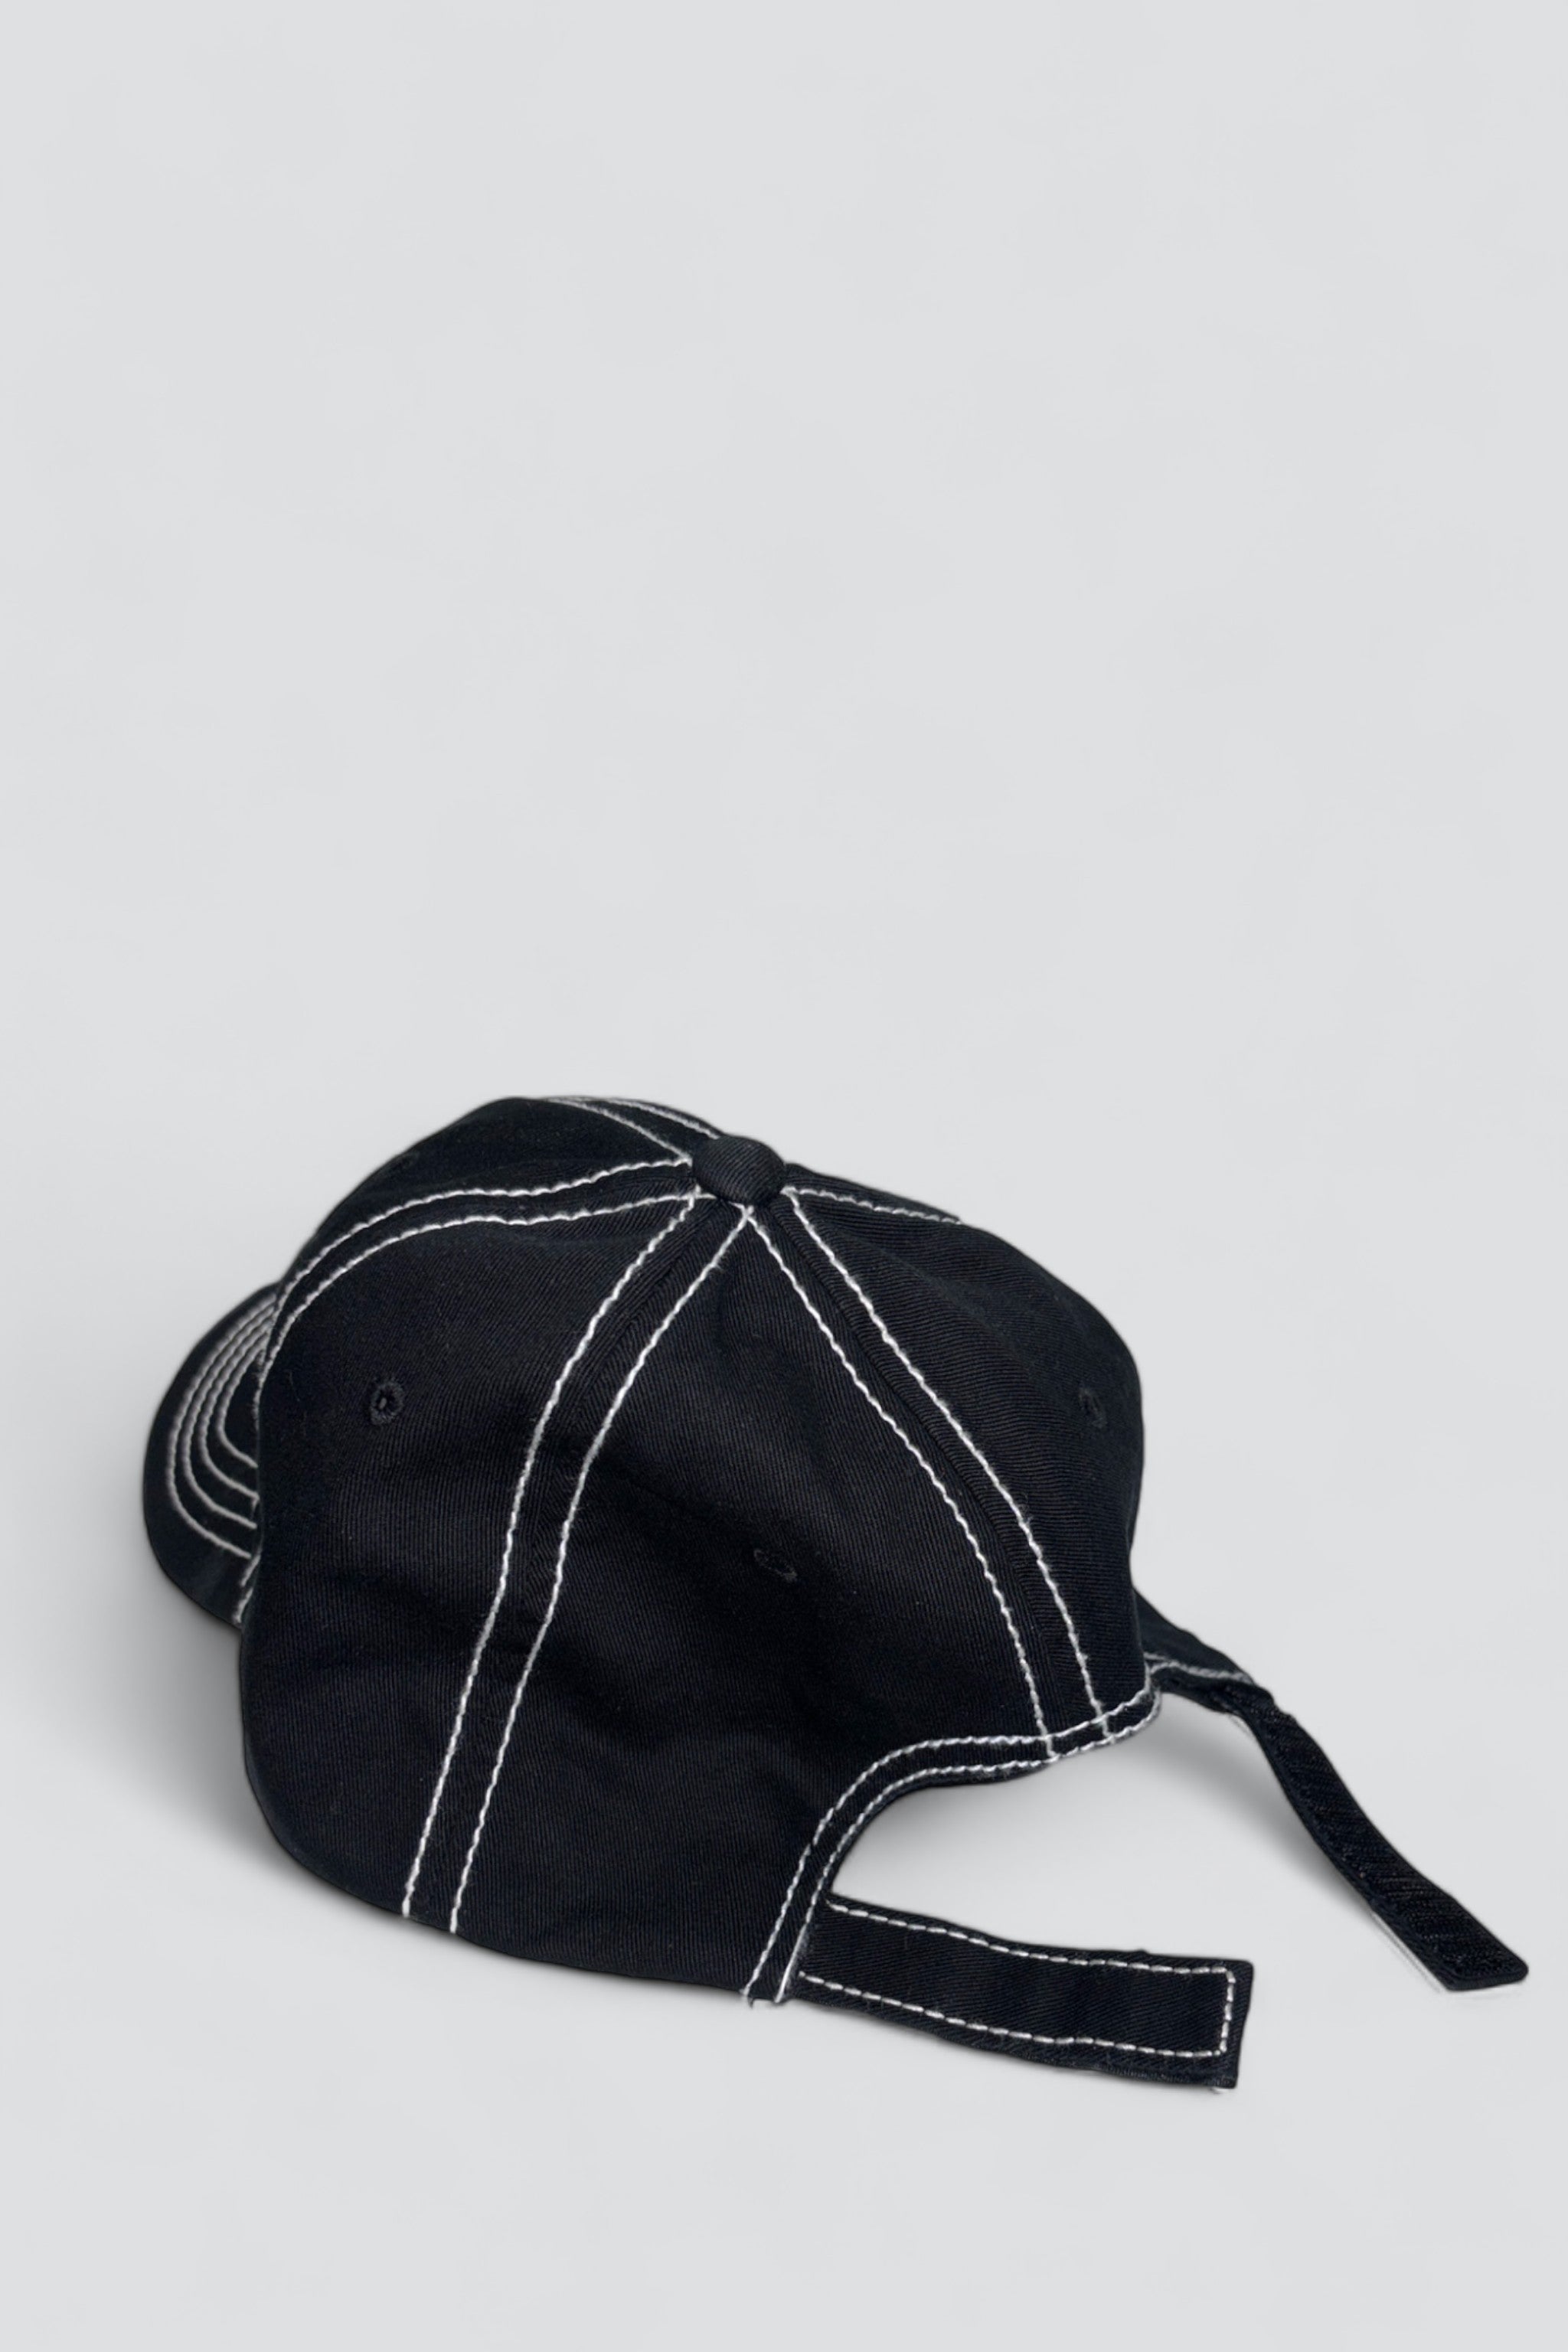 OVO Contrast Stitch Snapback Hat Black